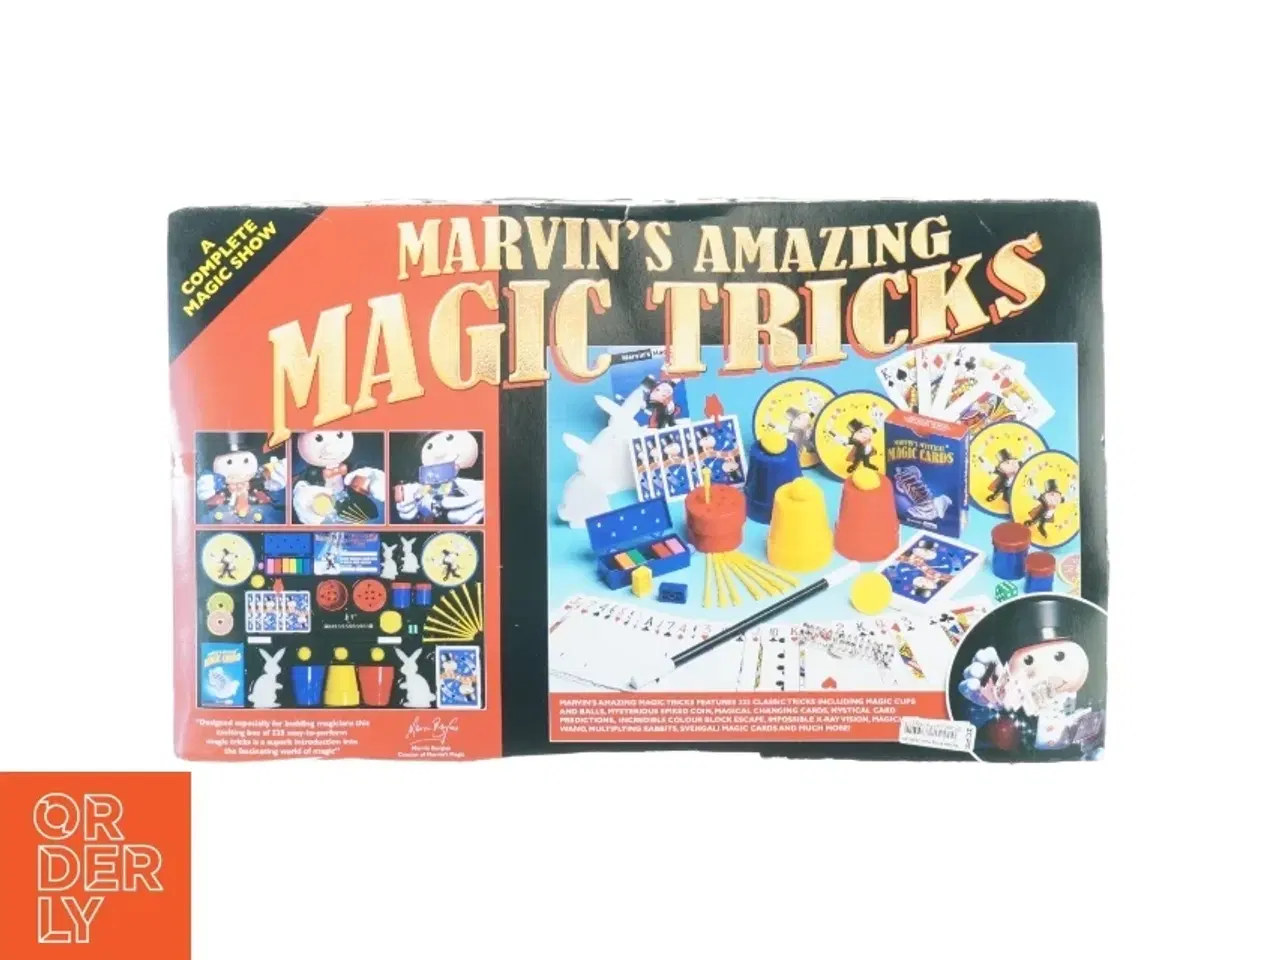 Billede 1 - Marvins amazing magic tricks fra Marvin Berglas (str. 43 x 26 cm)